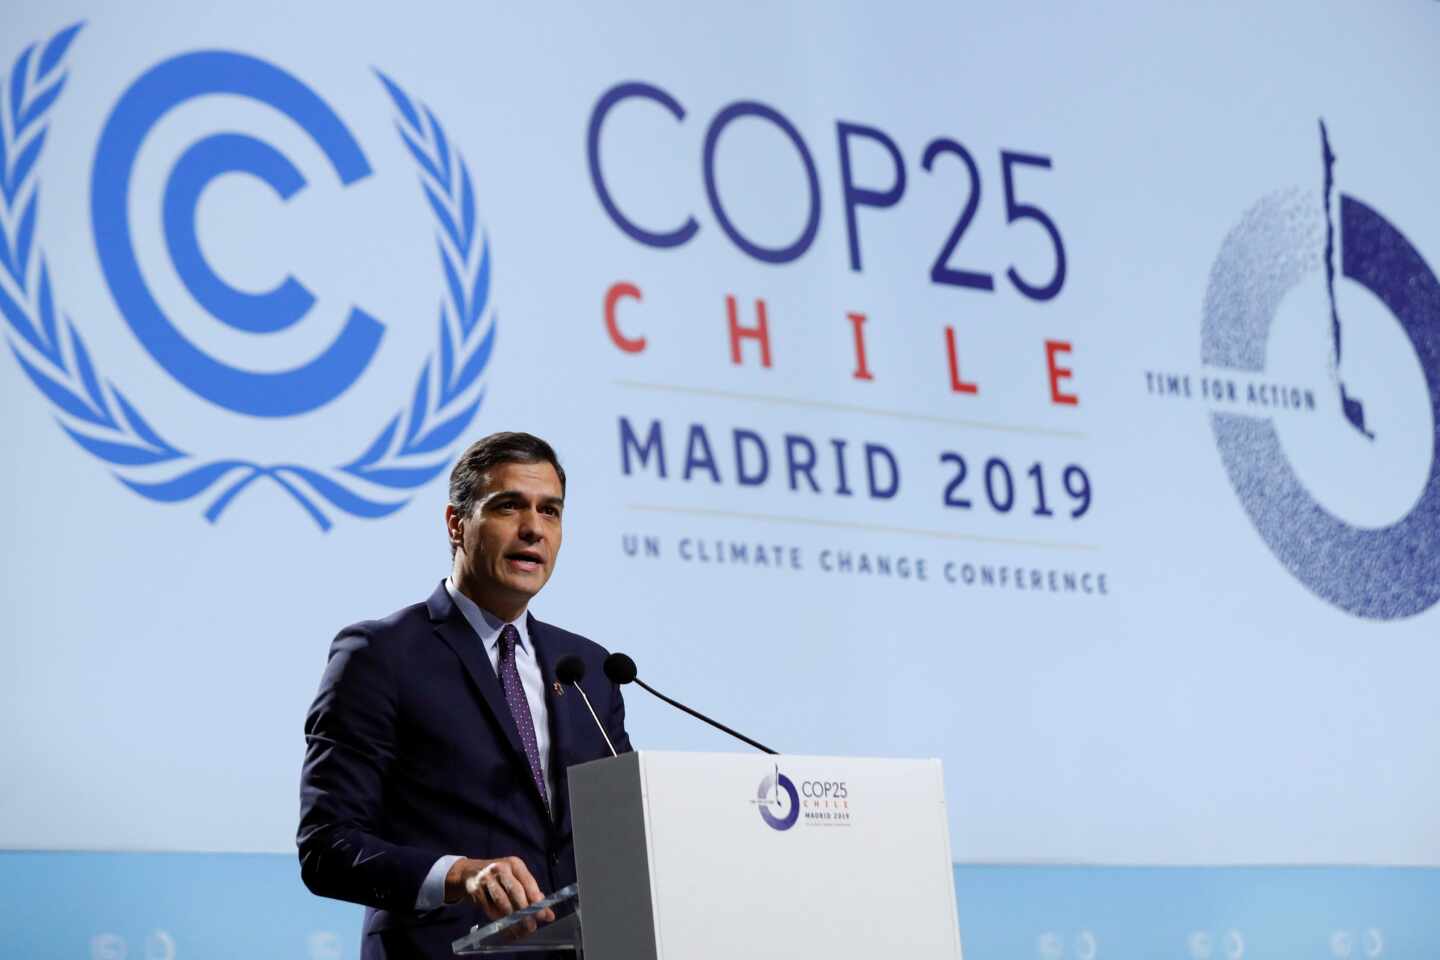 Sánchez carga contra los "fanáticos" en la COP25: "Hoy sólo un puñado niega la evidencia"